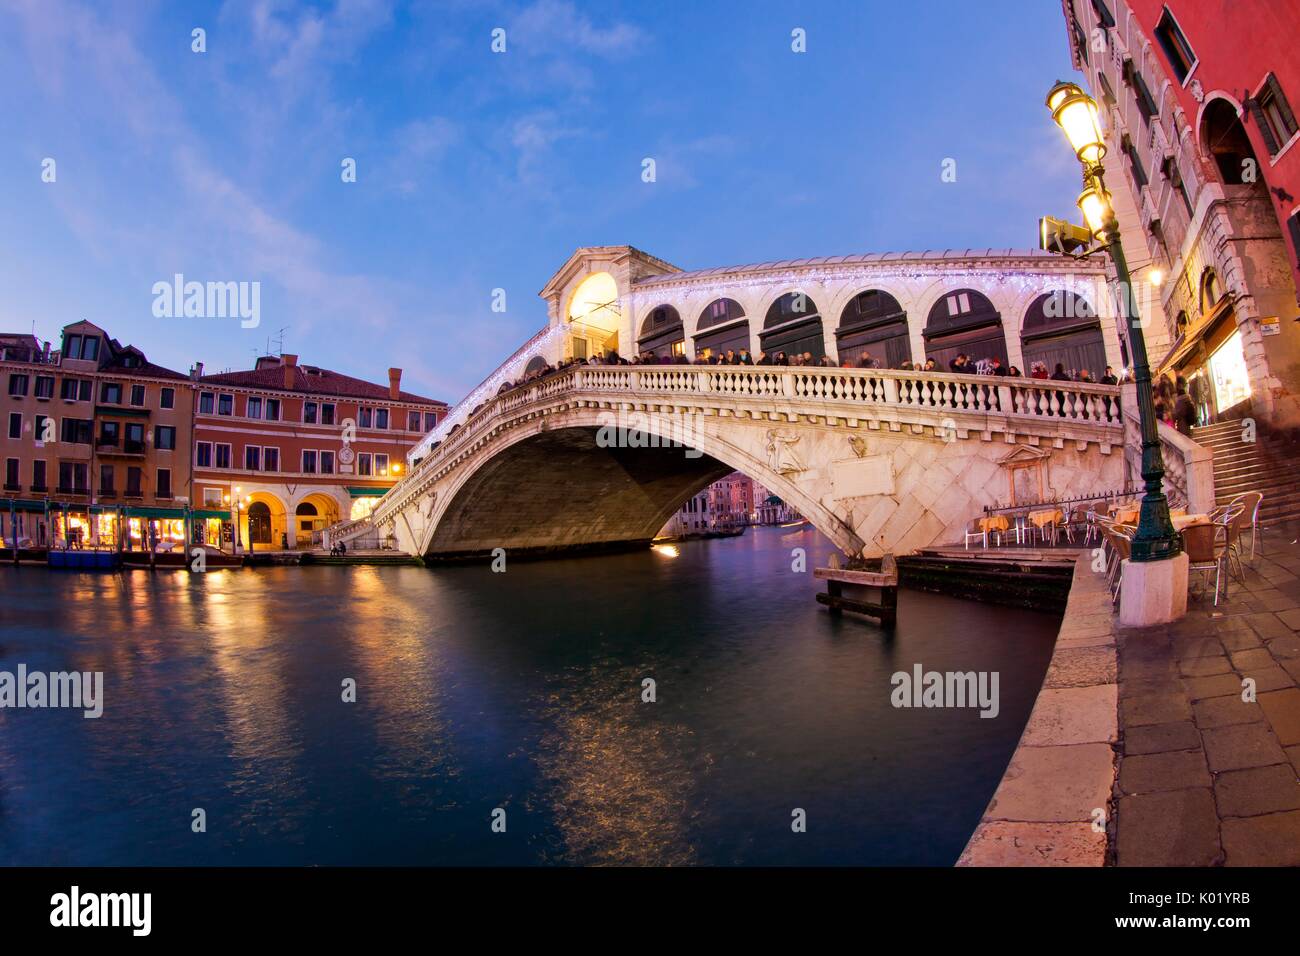 Puente de Rialto es uno de los cuatro puentes que cruzan el Gran Canal de Venecia, Italia. Foto de stock